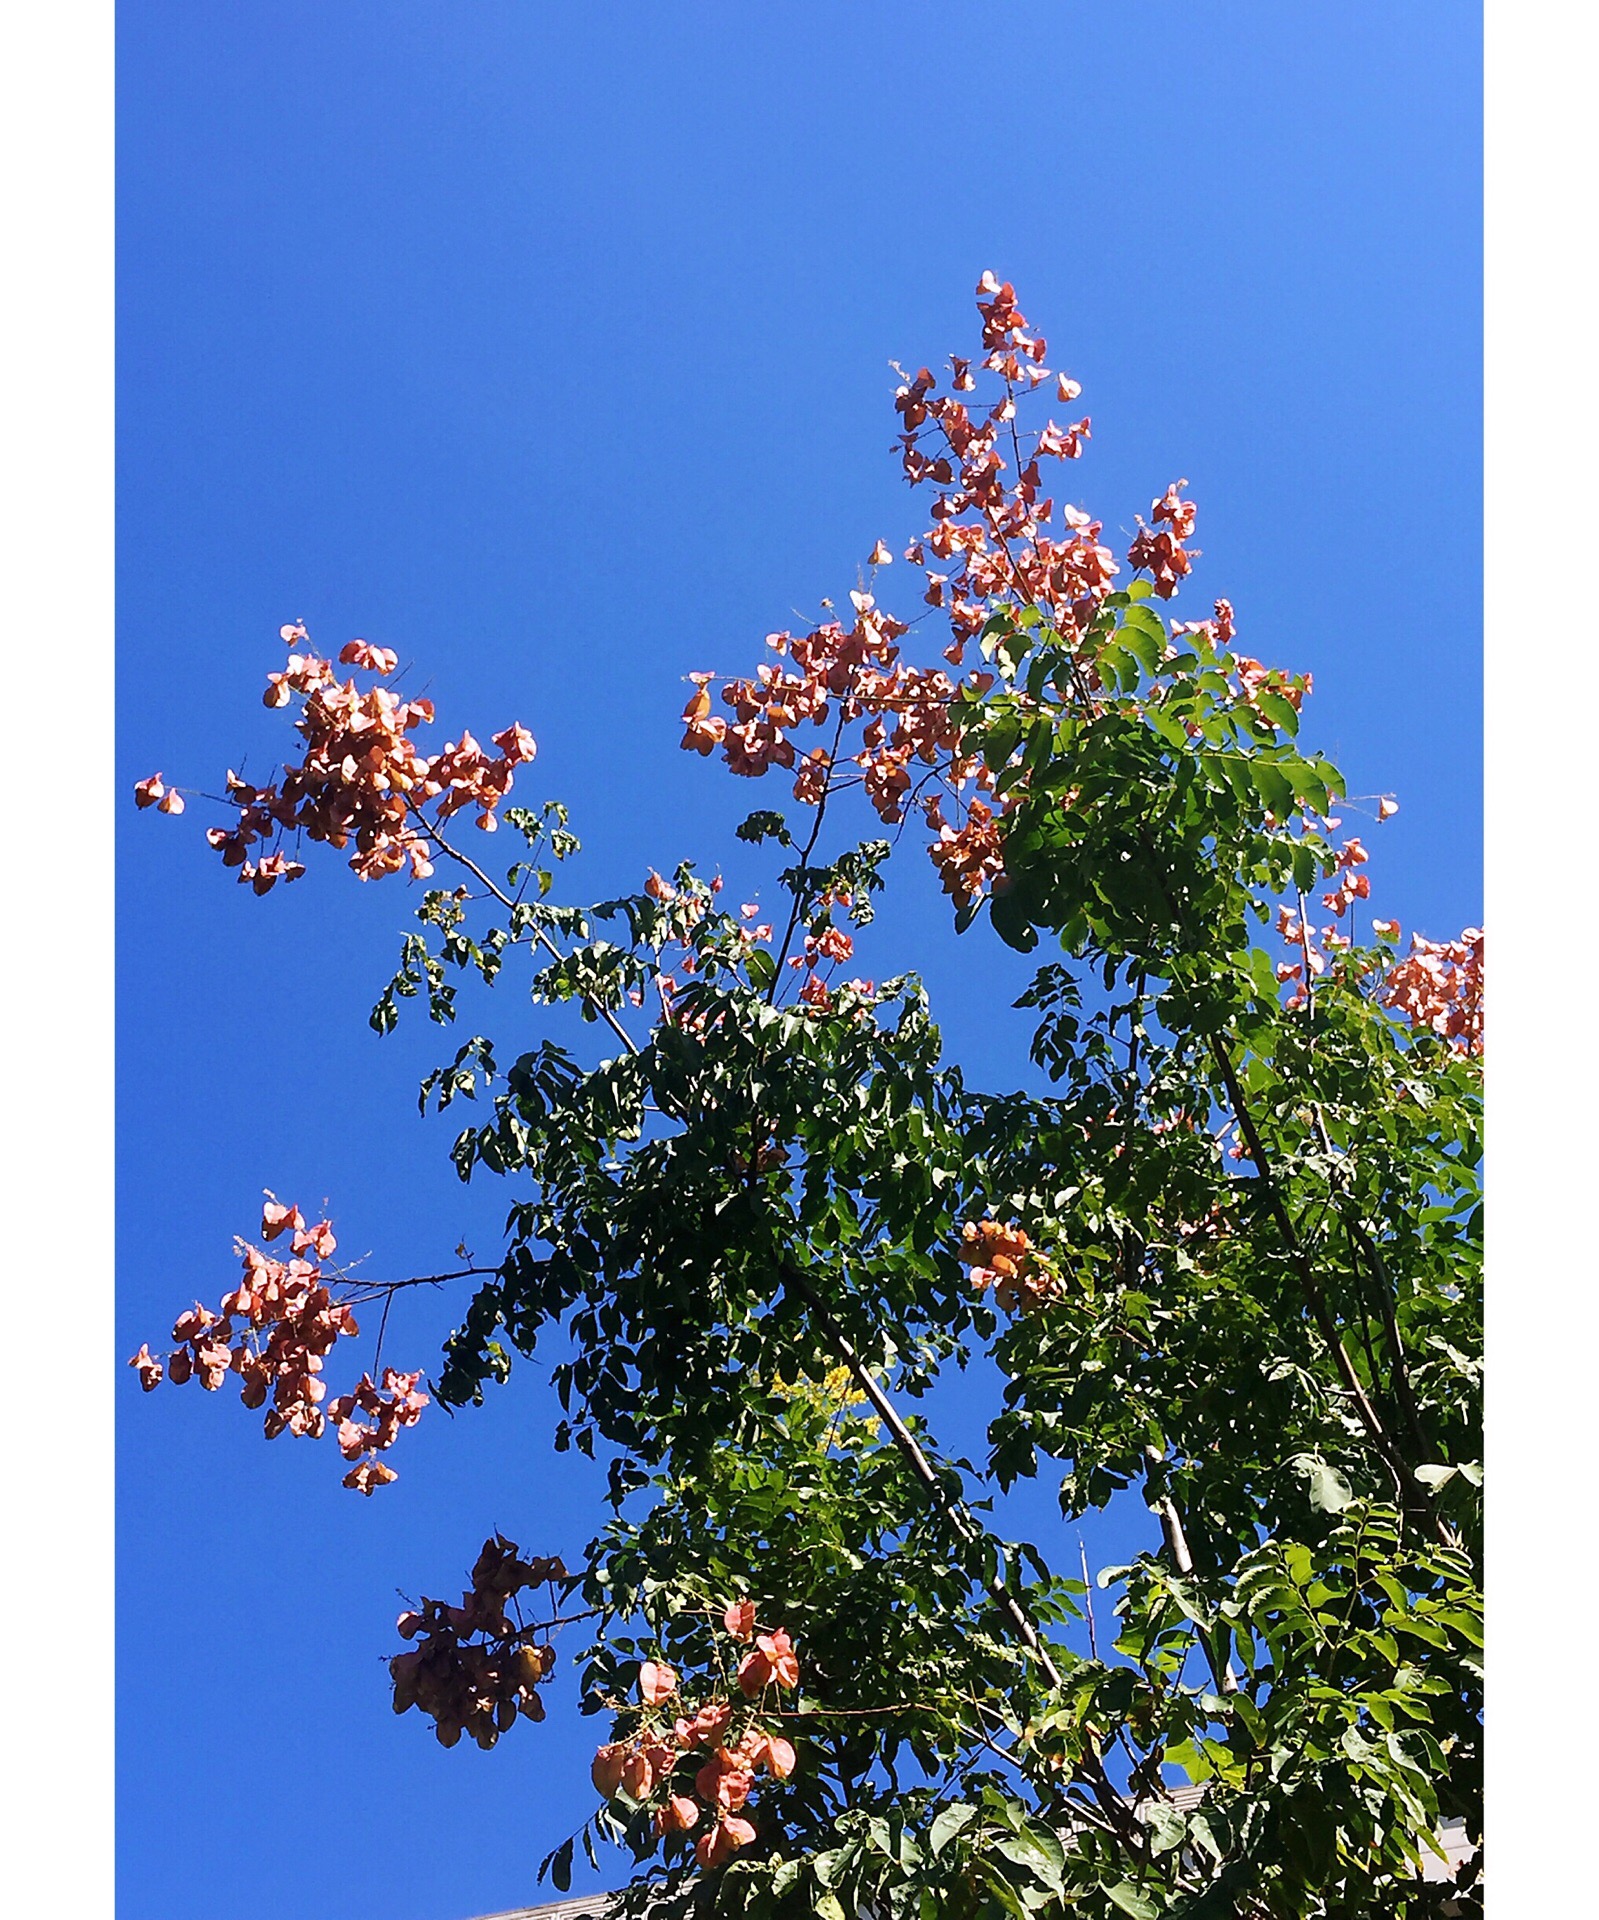 今儿中午遛弯，发现一种不知名的树，有褐色的果实，一串串的，远看像见到春天肆意的梨花般惊喜，其实不是纯